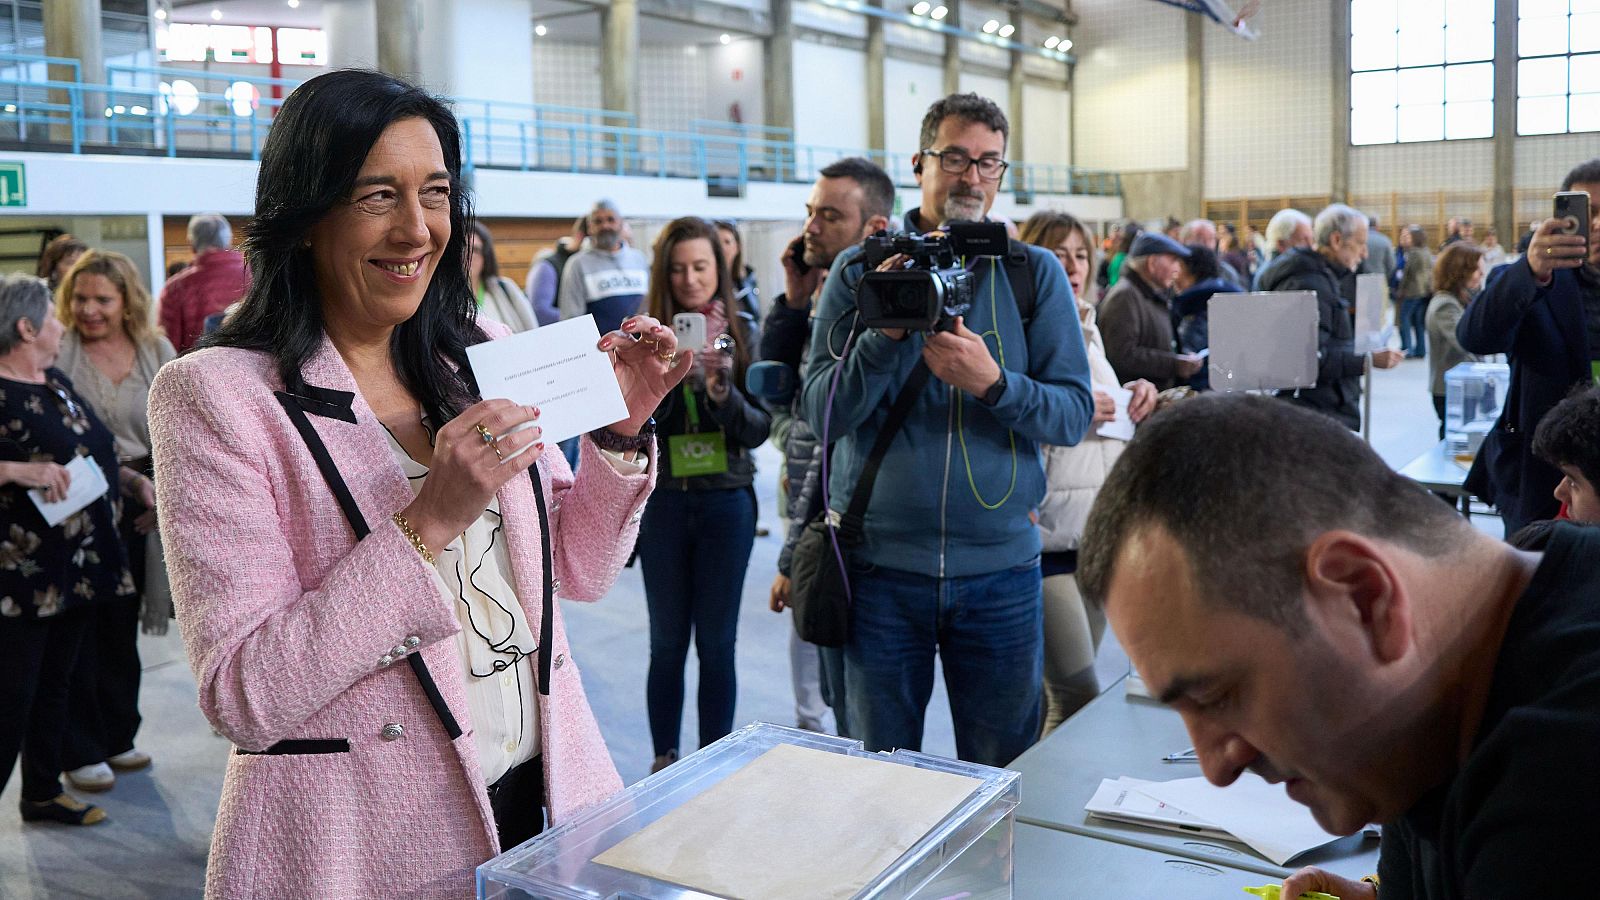 Martínez (Vox) vota en Vitoria y espera "votos valientes y patriotas"